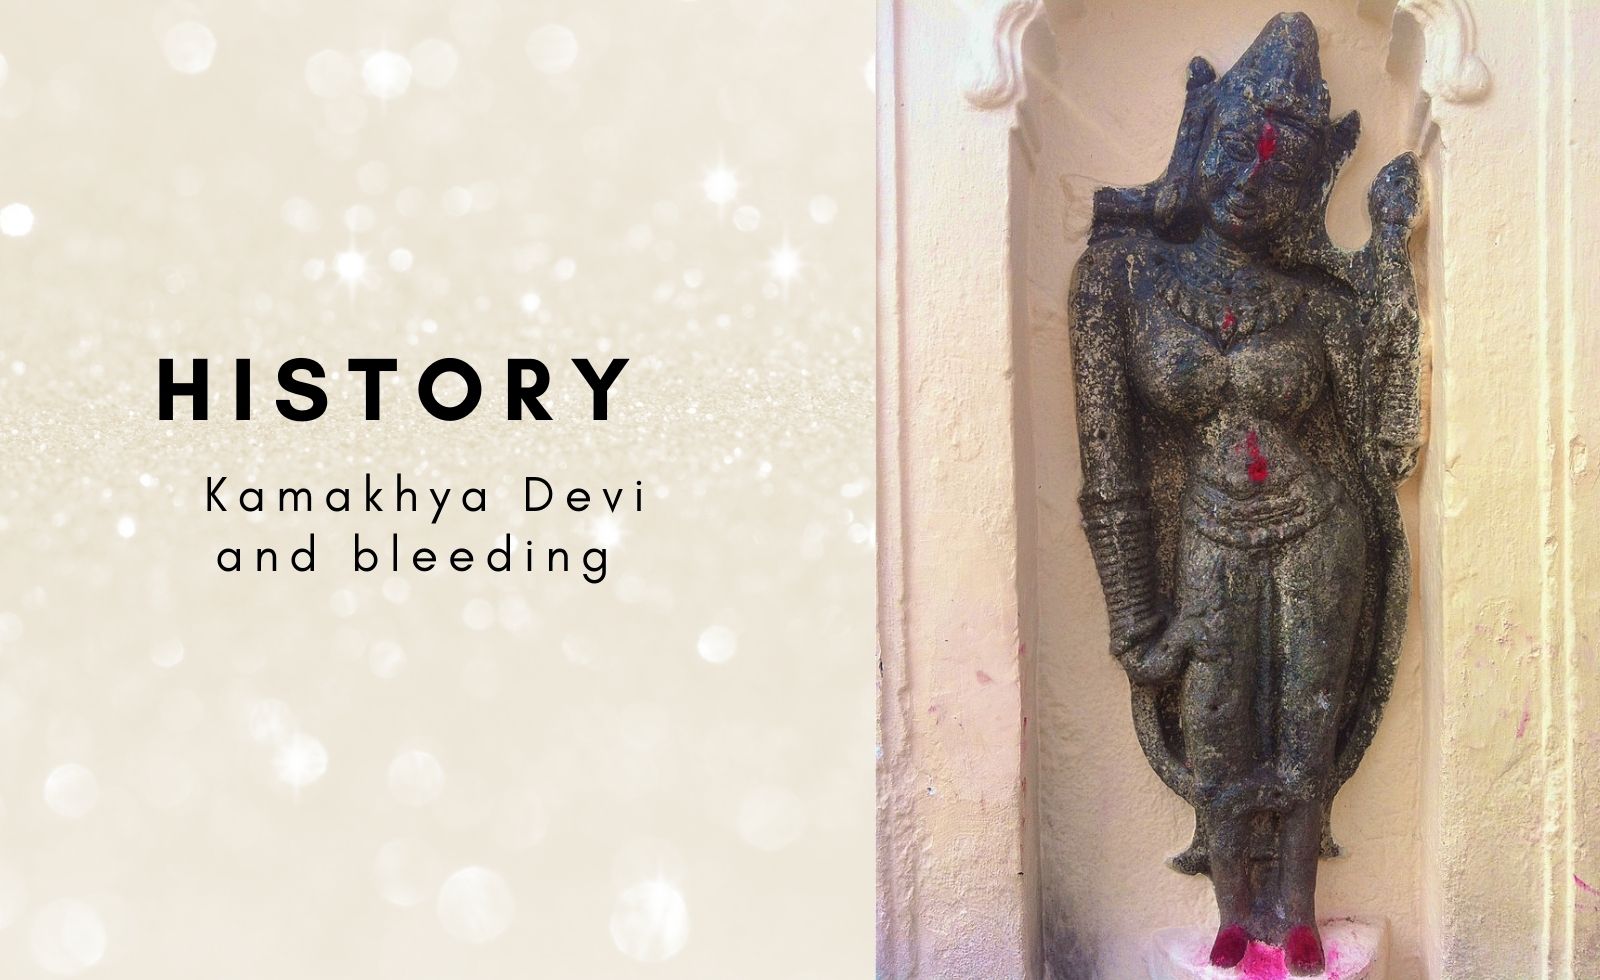 History of Kamakhya Devi and bleeding